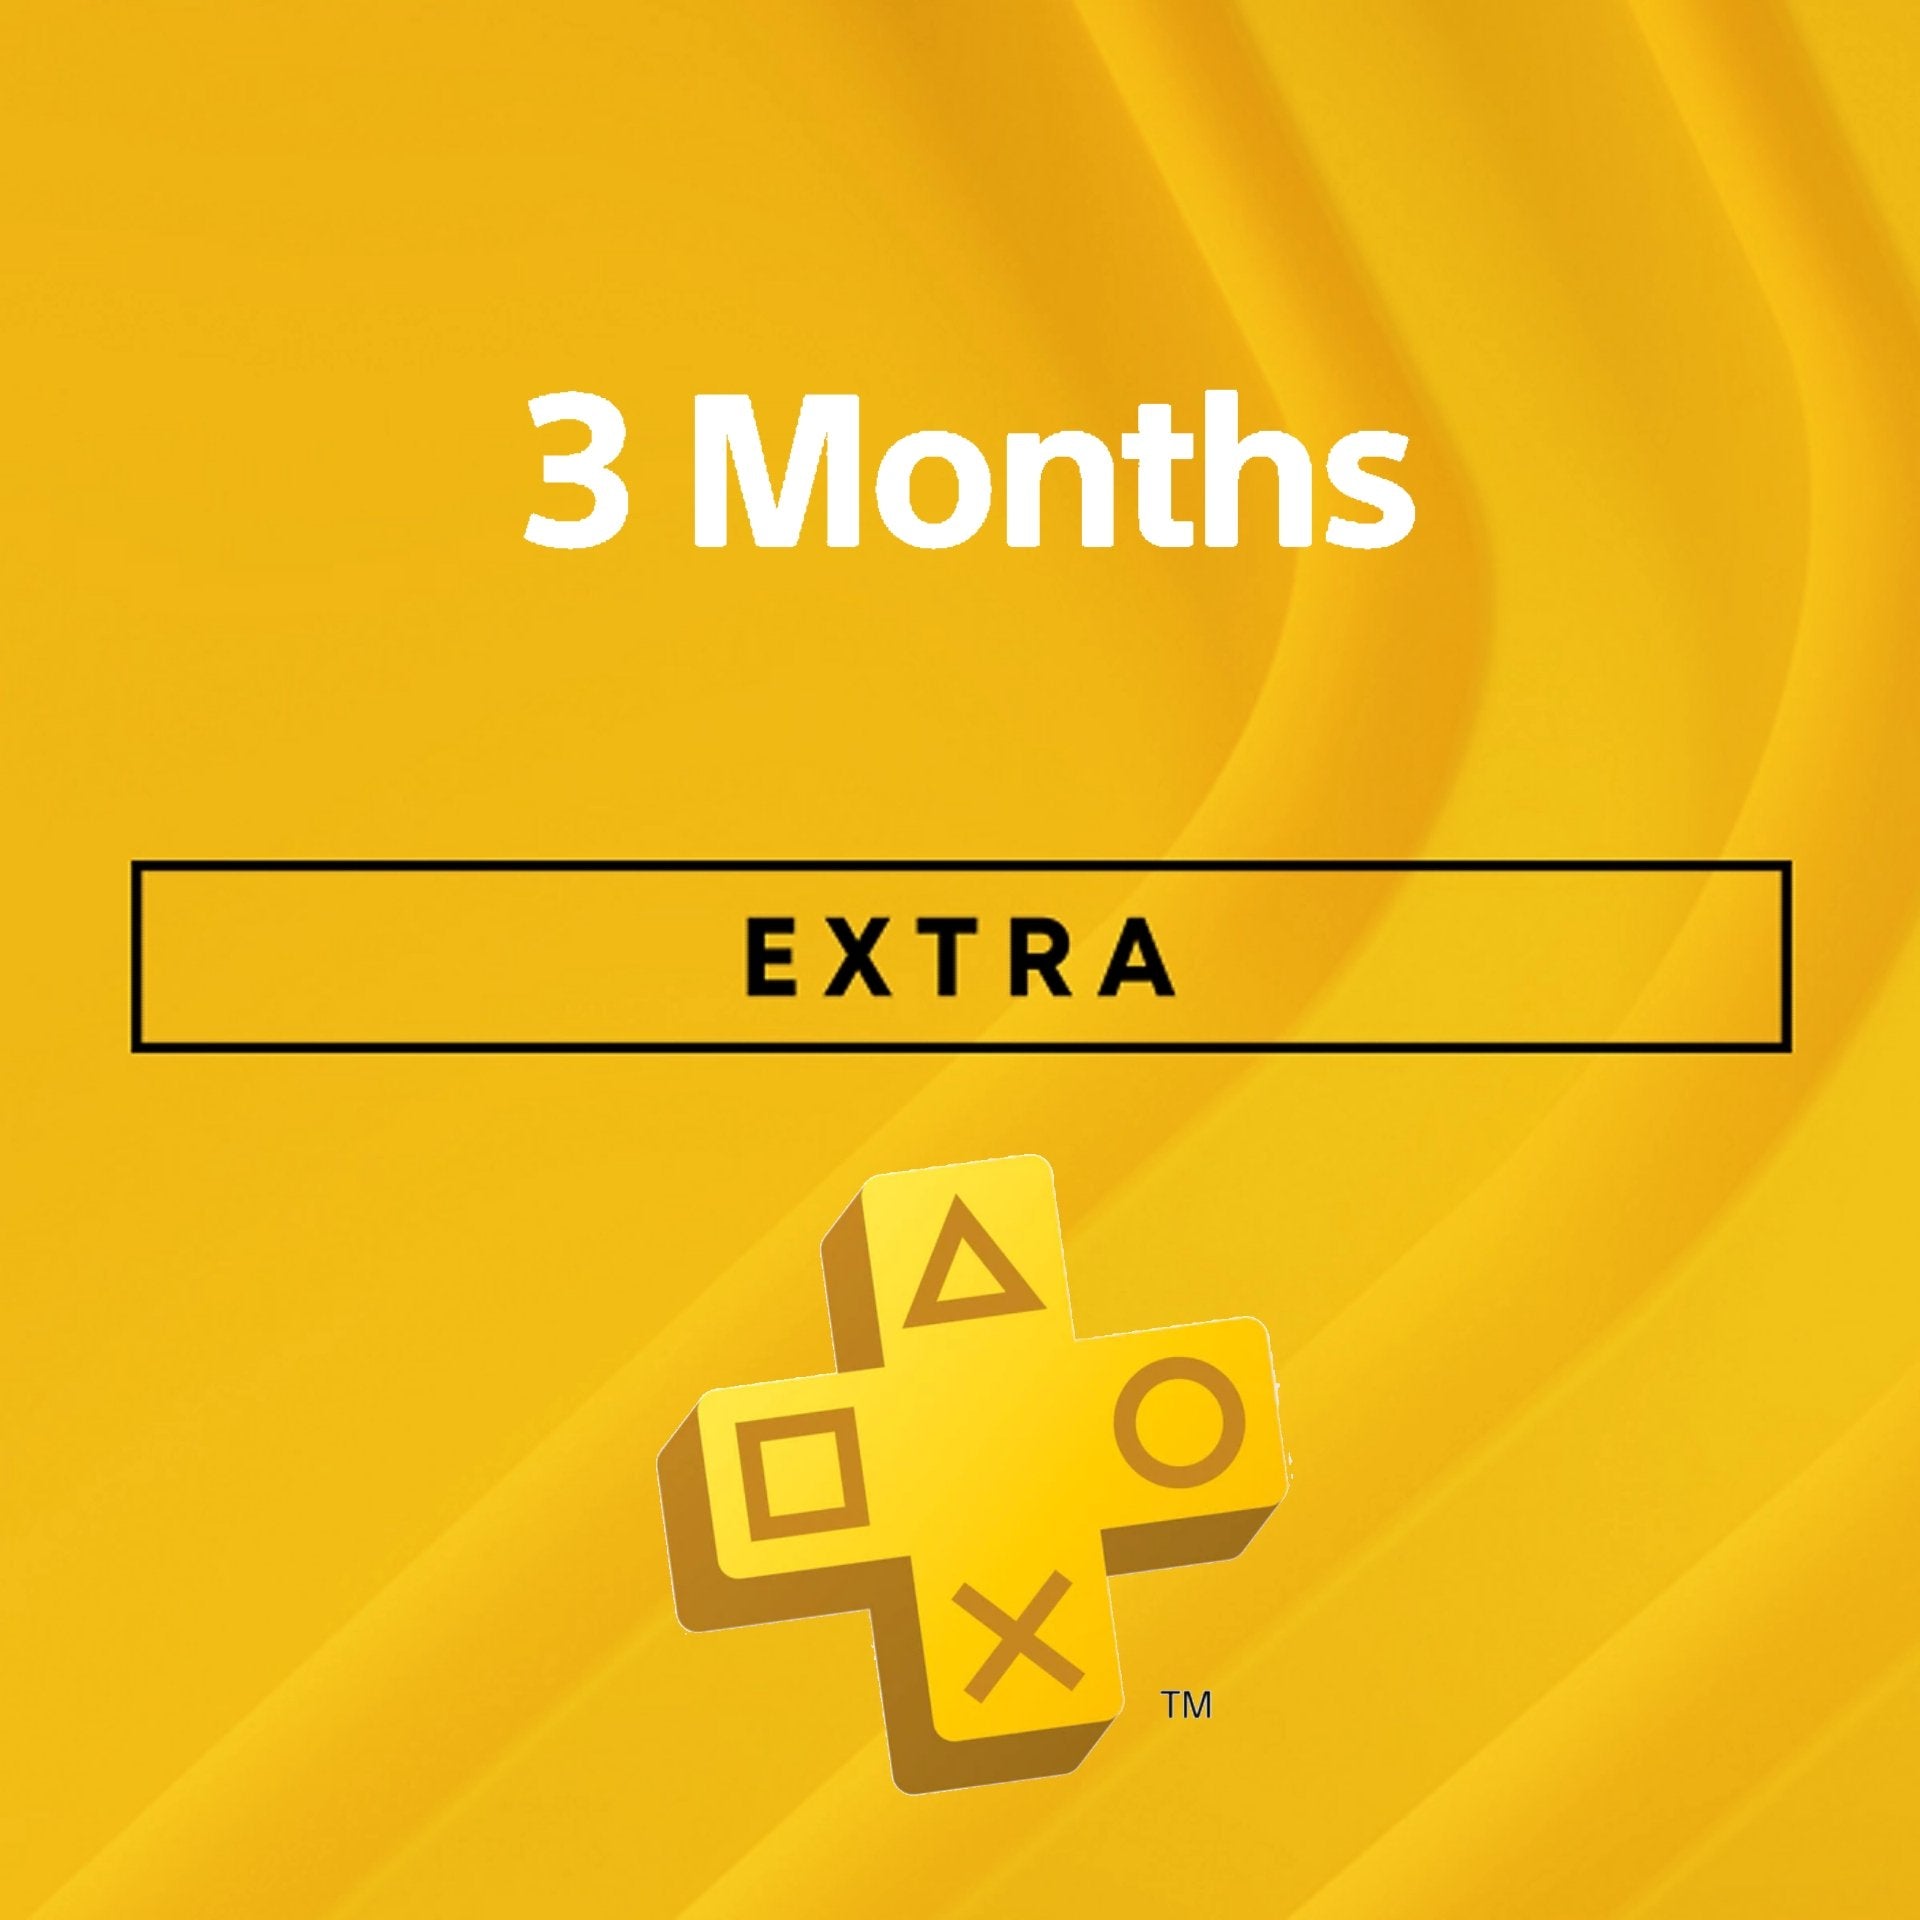 PlayStation Plus Extra: suscripción de 3 meses